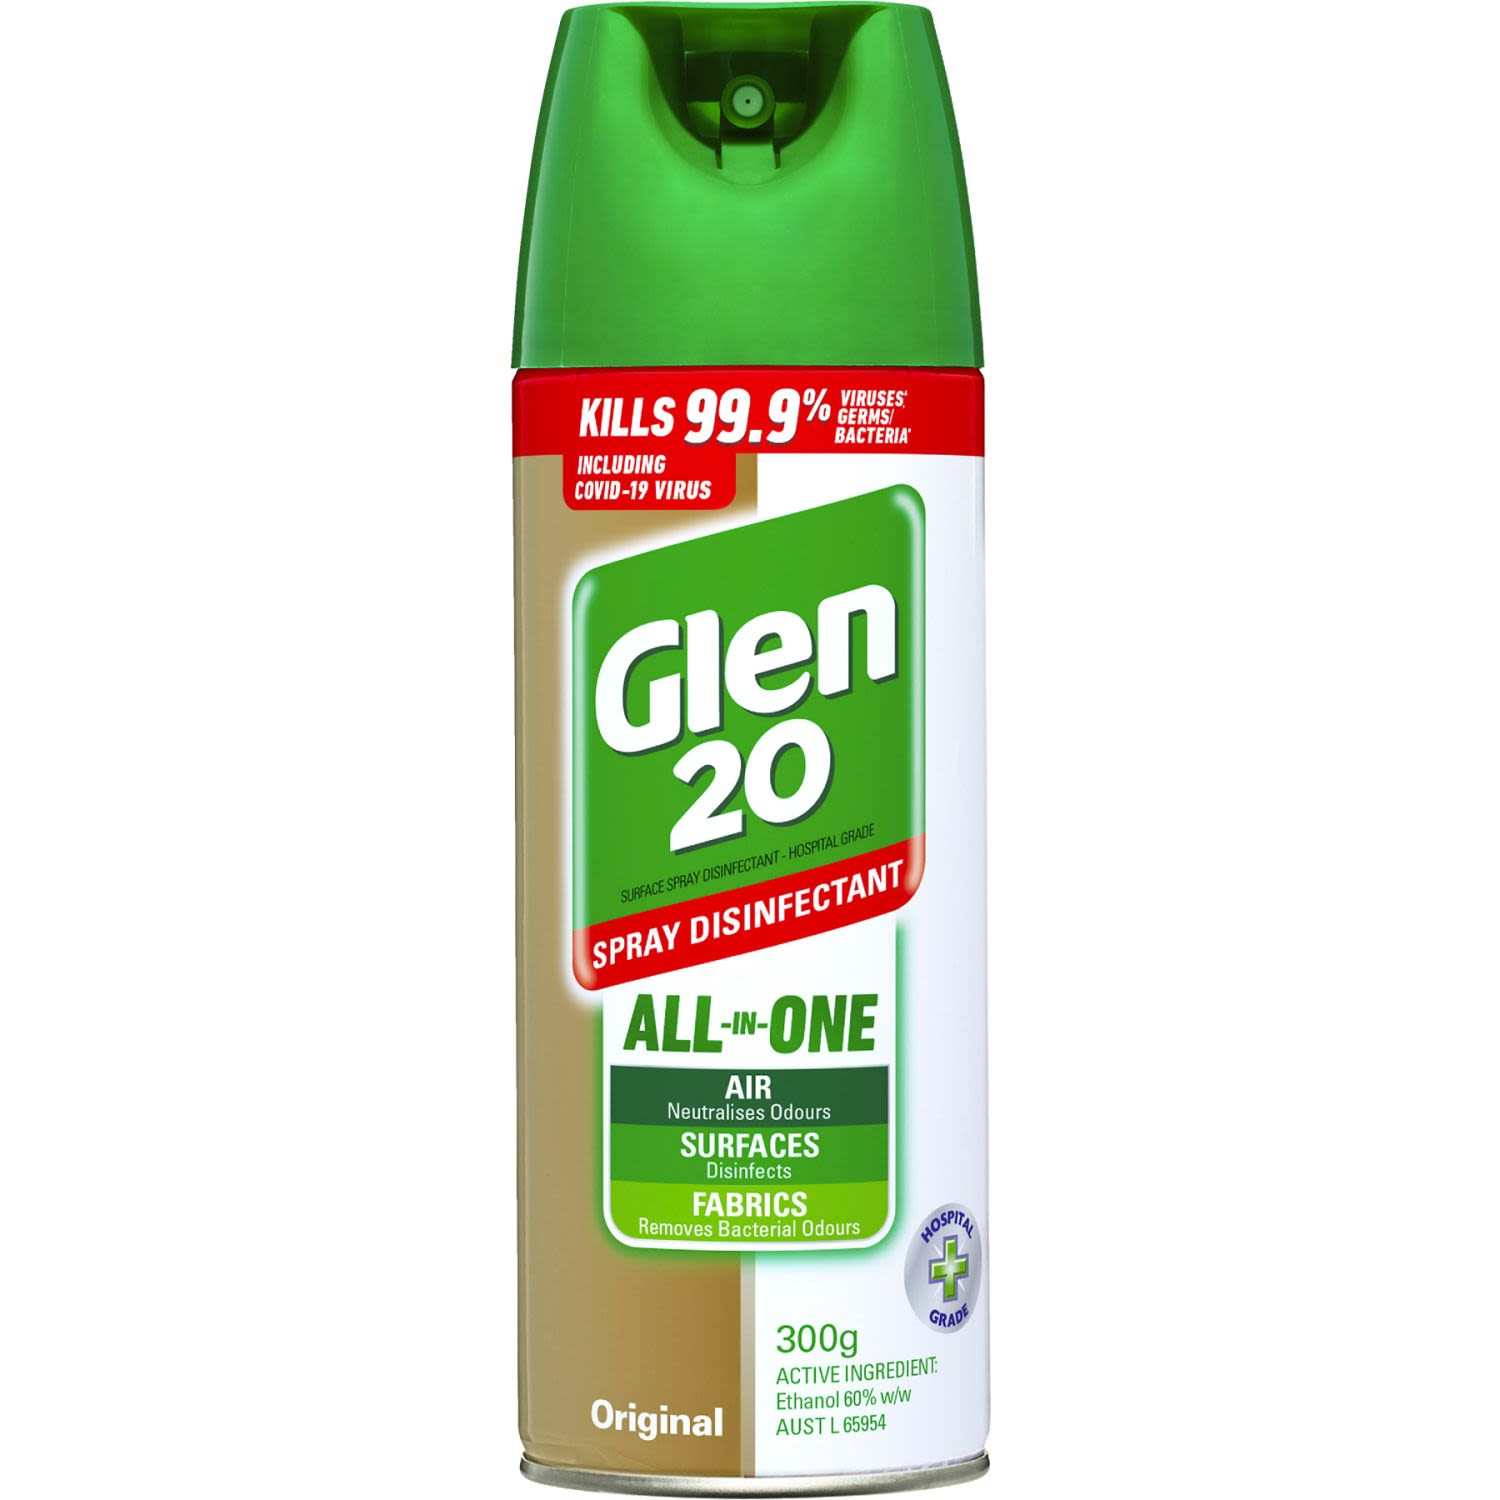 Glen 20 All-In-One Disinfectant Spray Original, 300 Gram